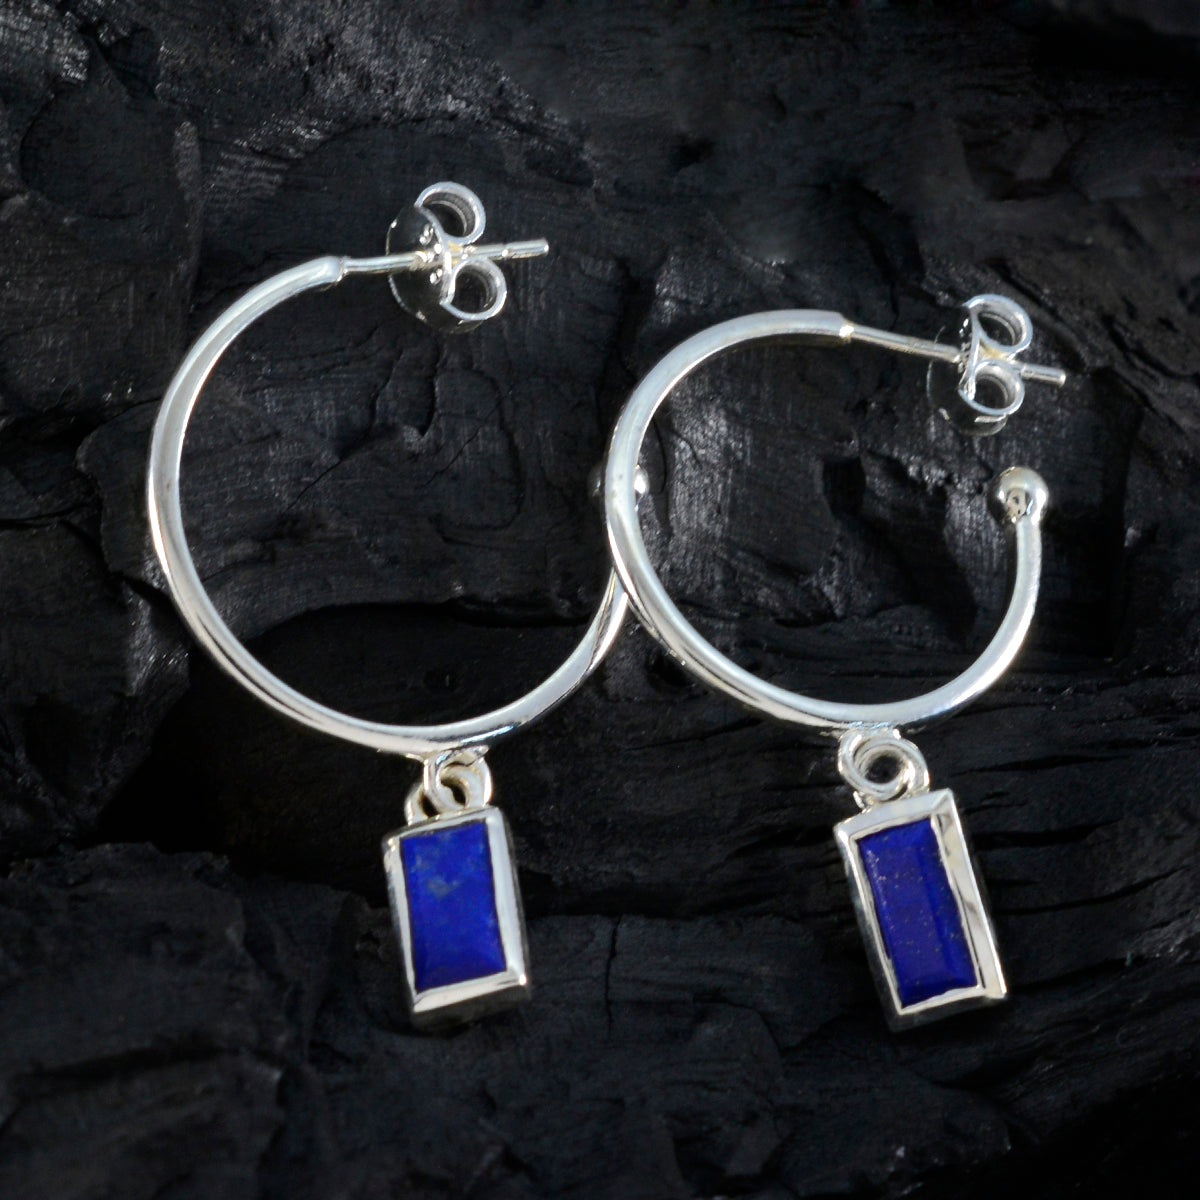 Riyo jolie boucle d'oreille en argent sterling 925 pour fille lapis lazuli boucle d'oreille réglage de la lunette boucle d'oreille bleue boucle d'oreille pendante